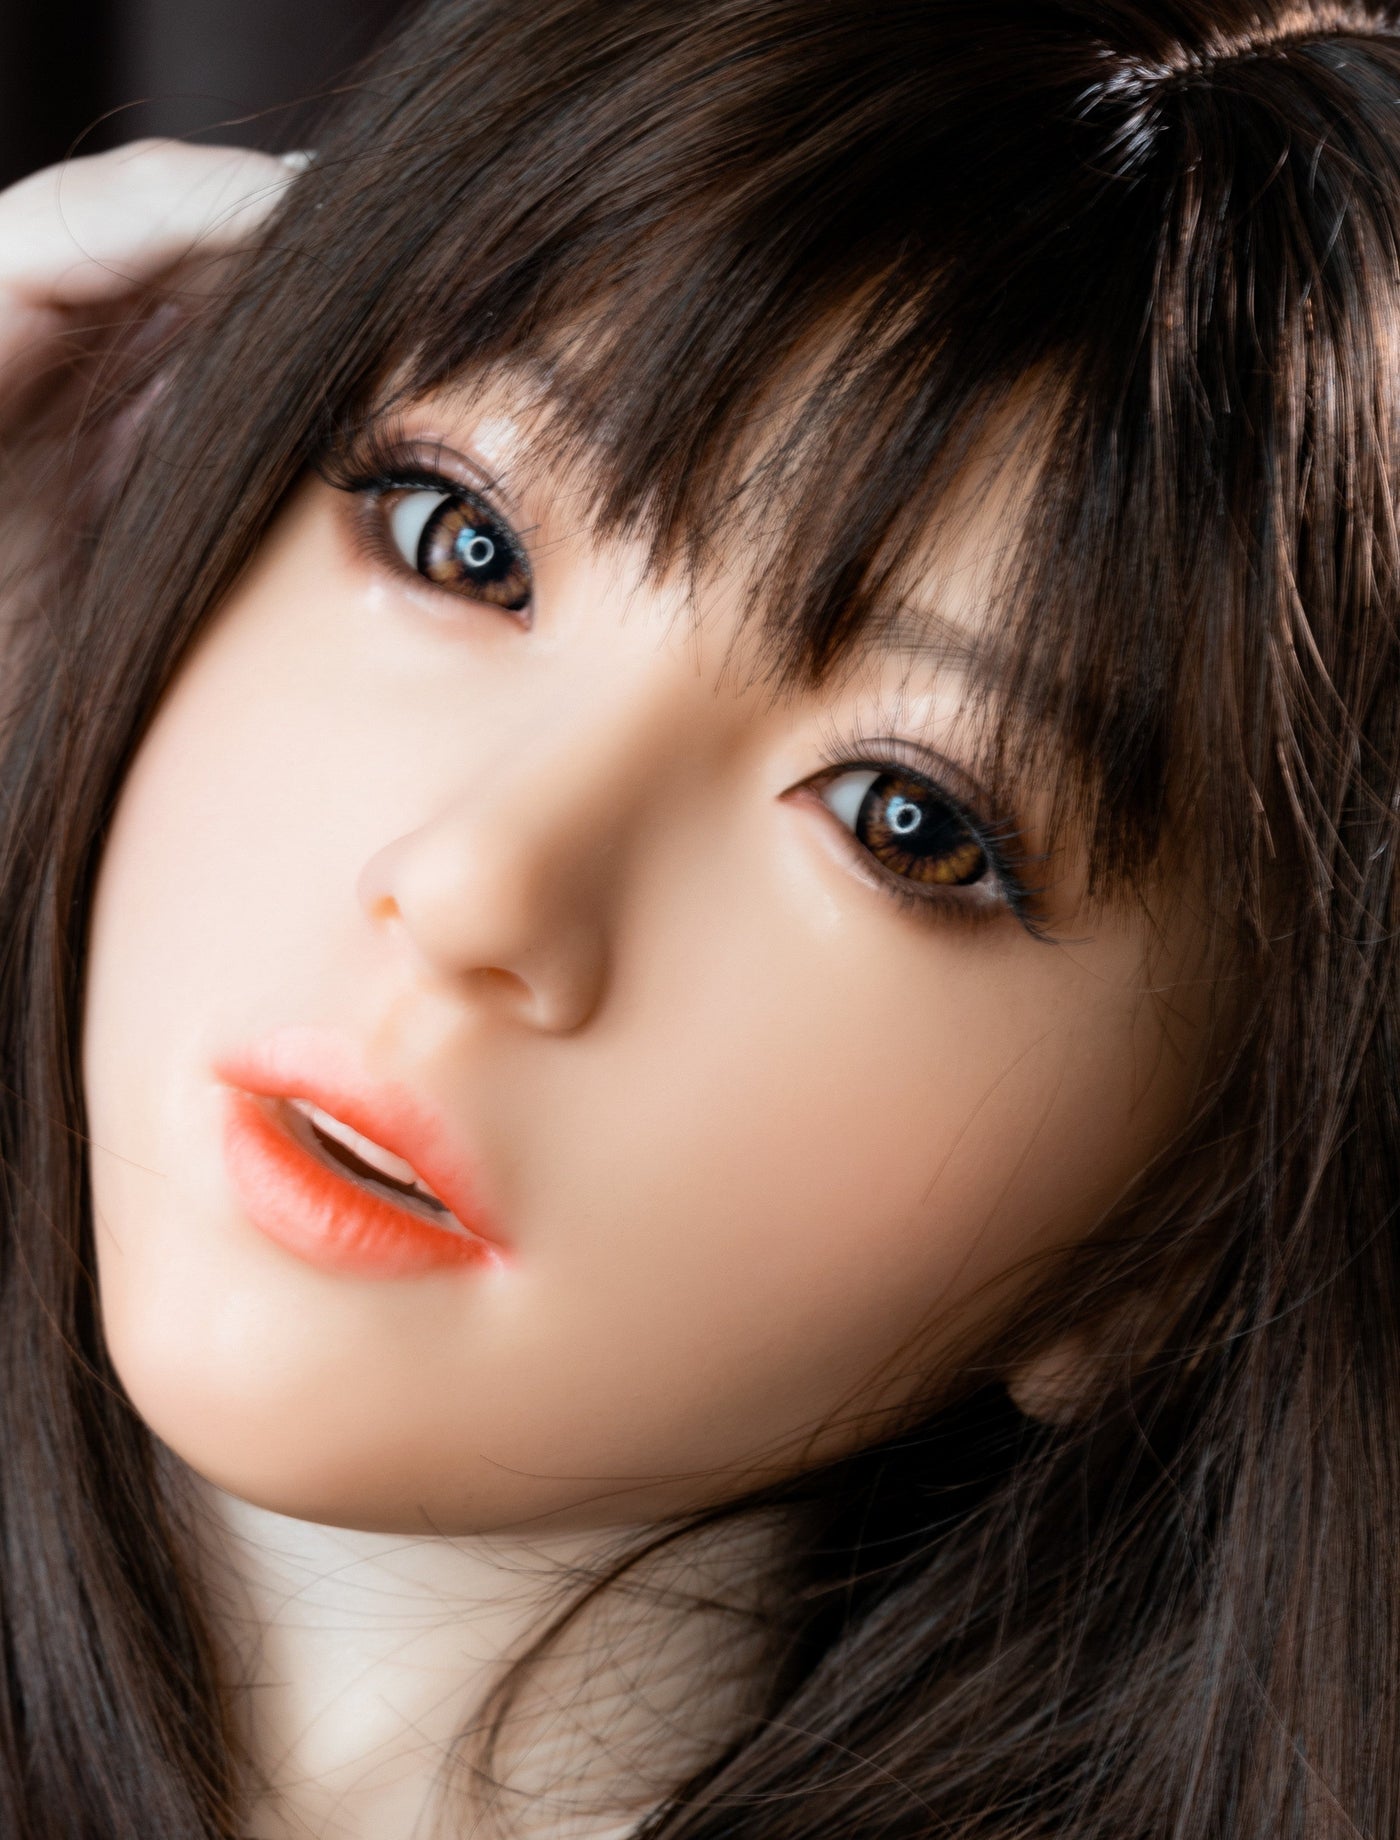 IL Doll - Silicone Sex Doll Head - M16 Compatible - Natural